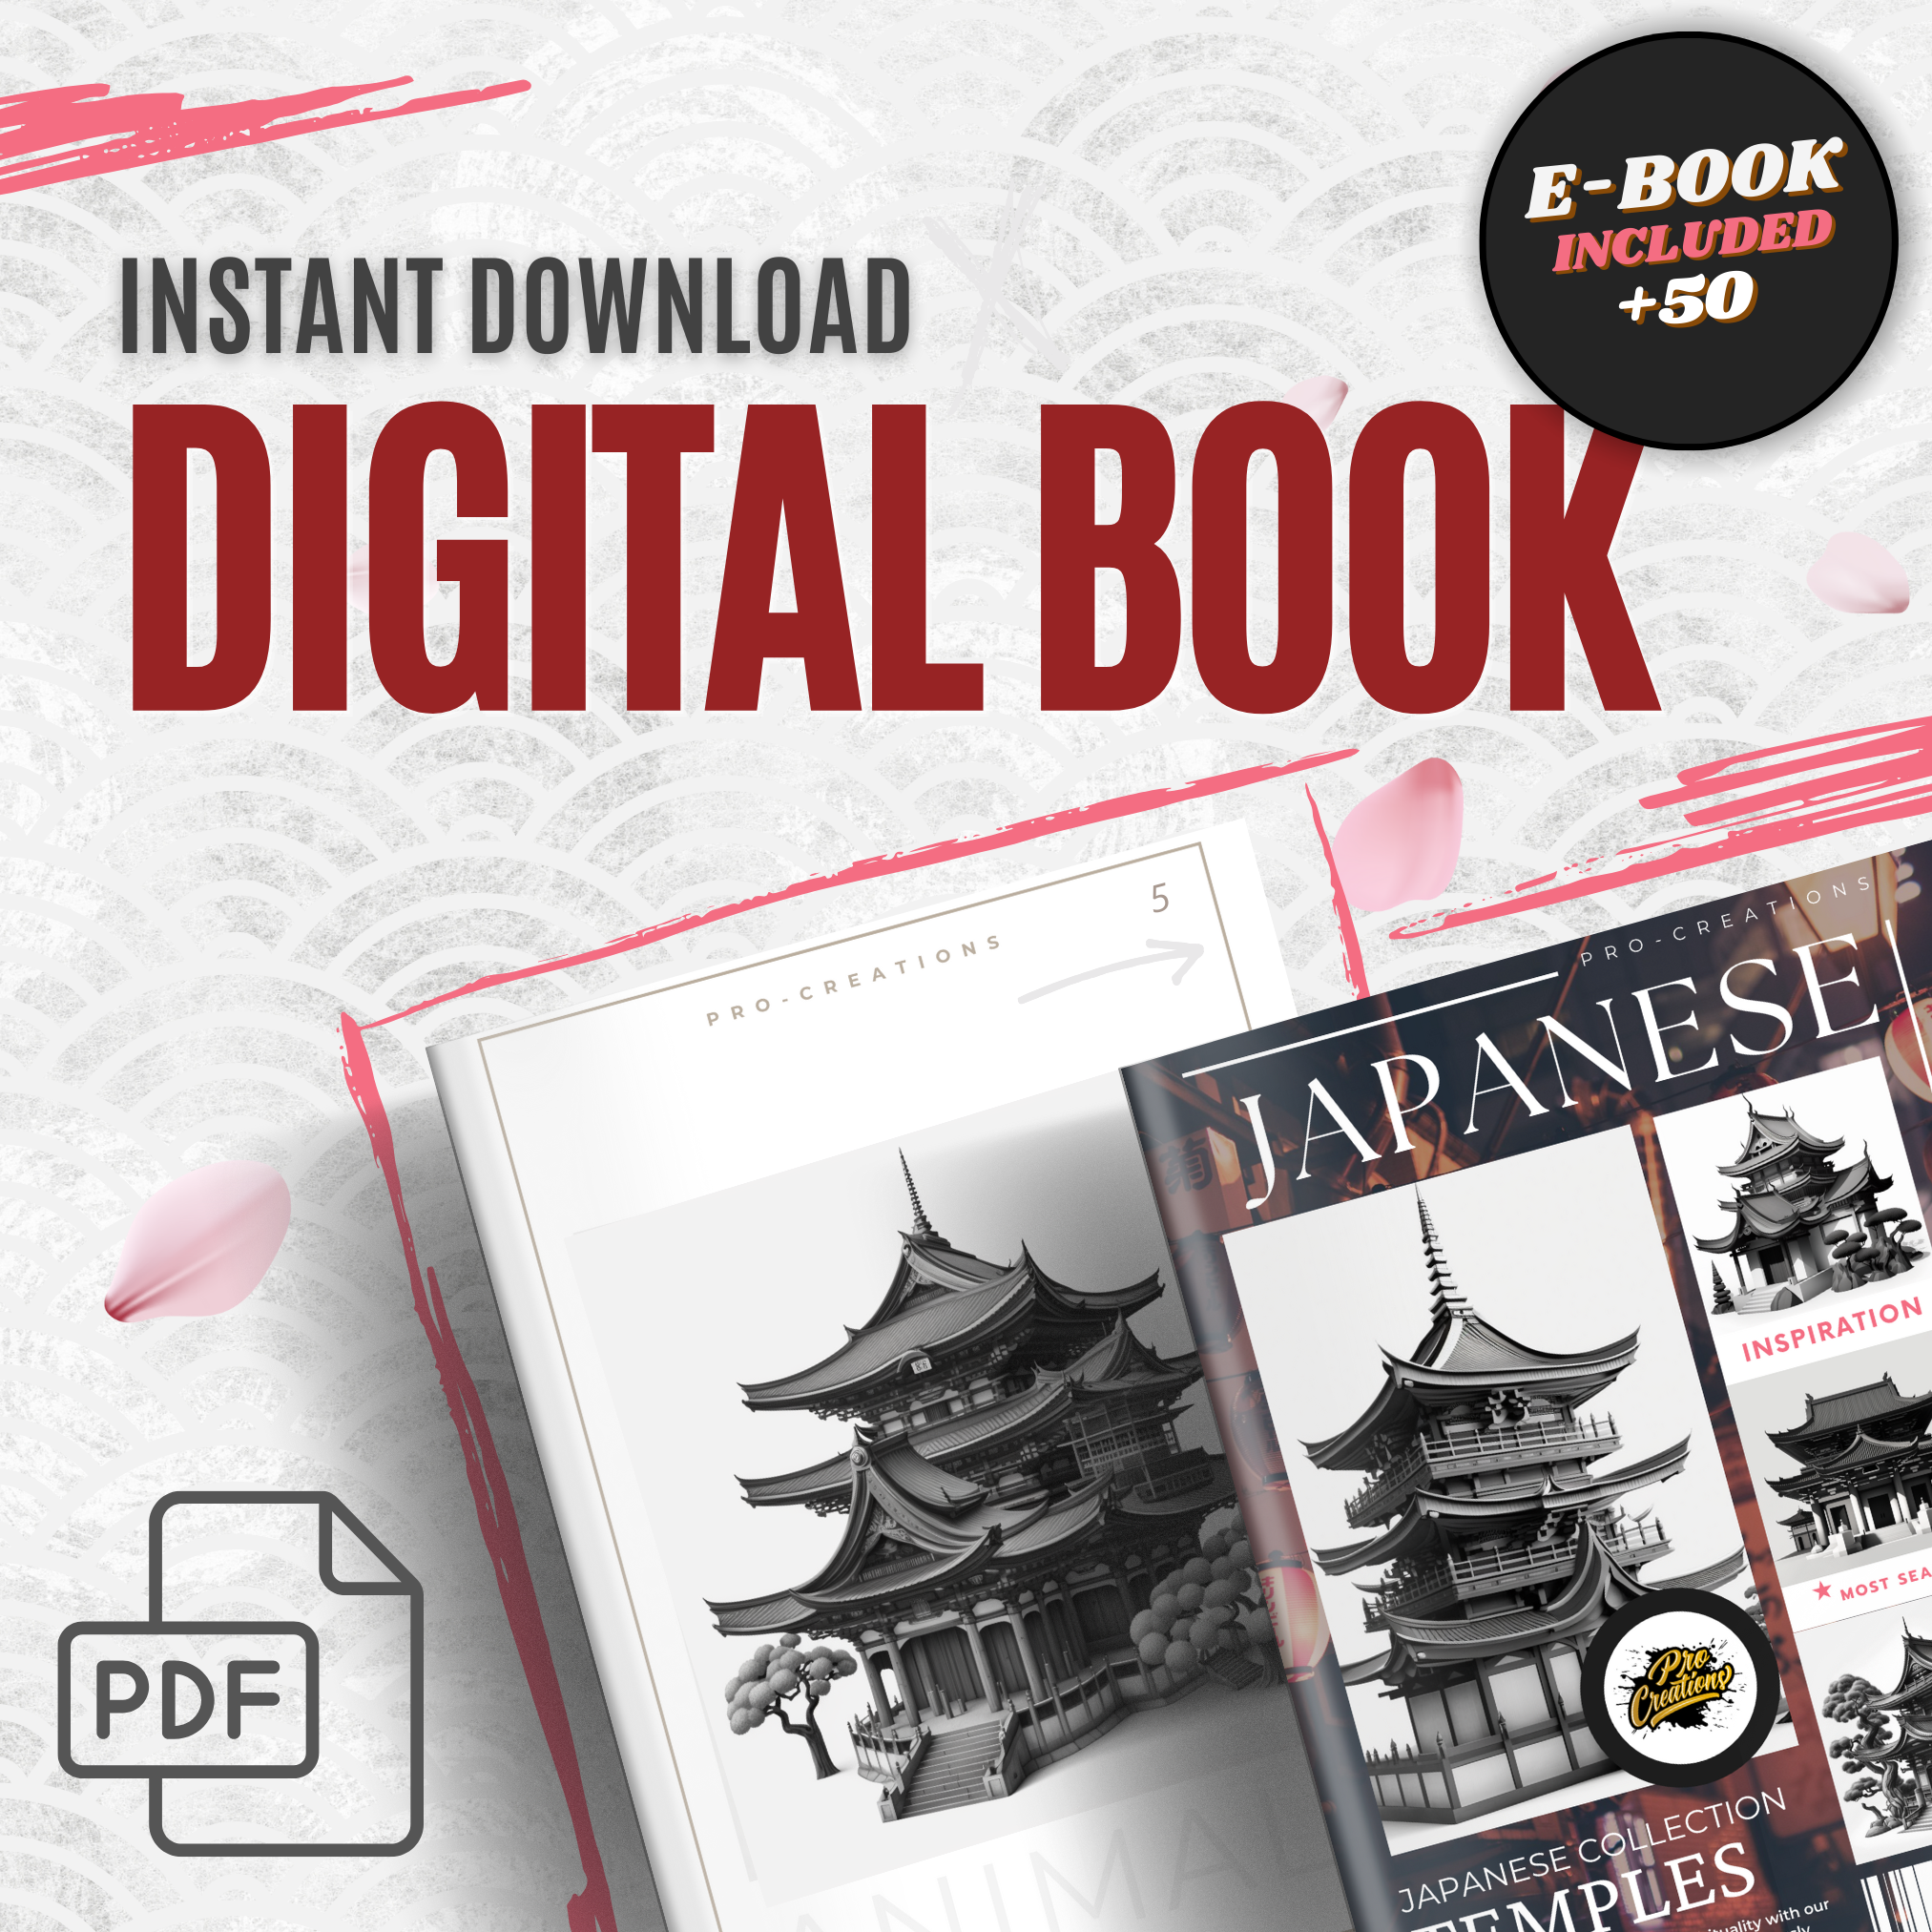 Digitale Referenzdesignsammlung japanischer Tempel: 50 Procreate- und Skizzenbuchbilder